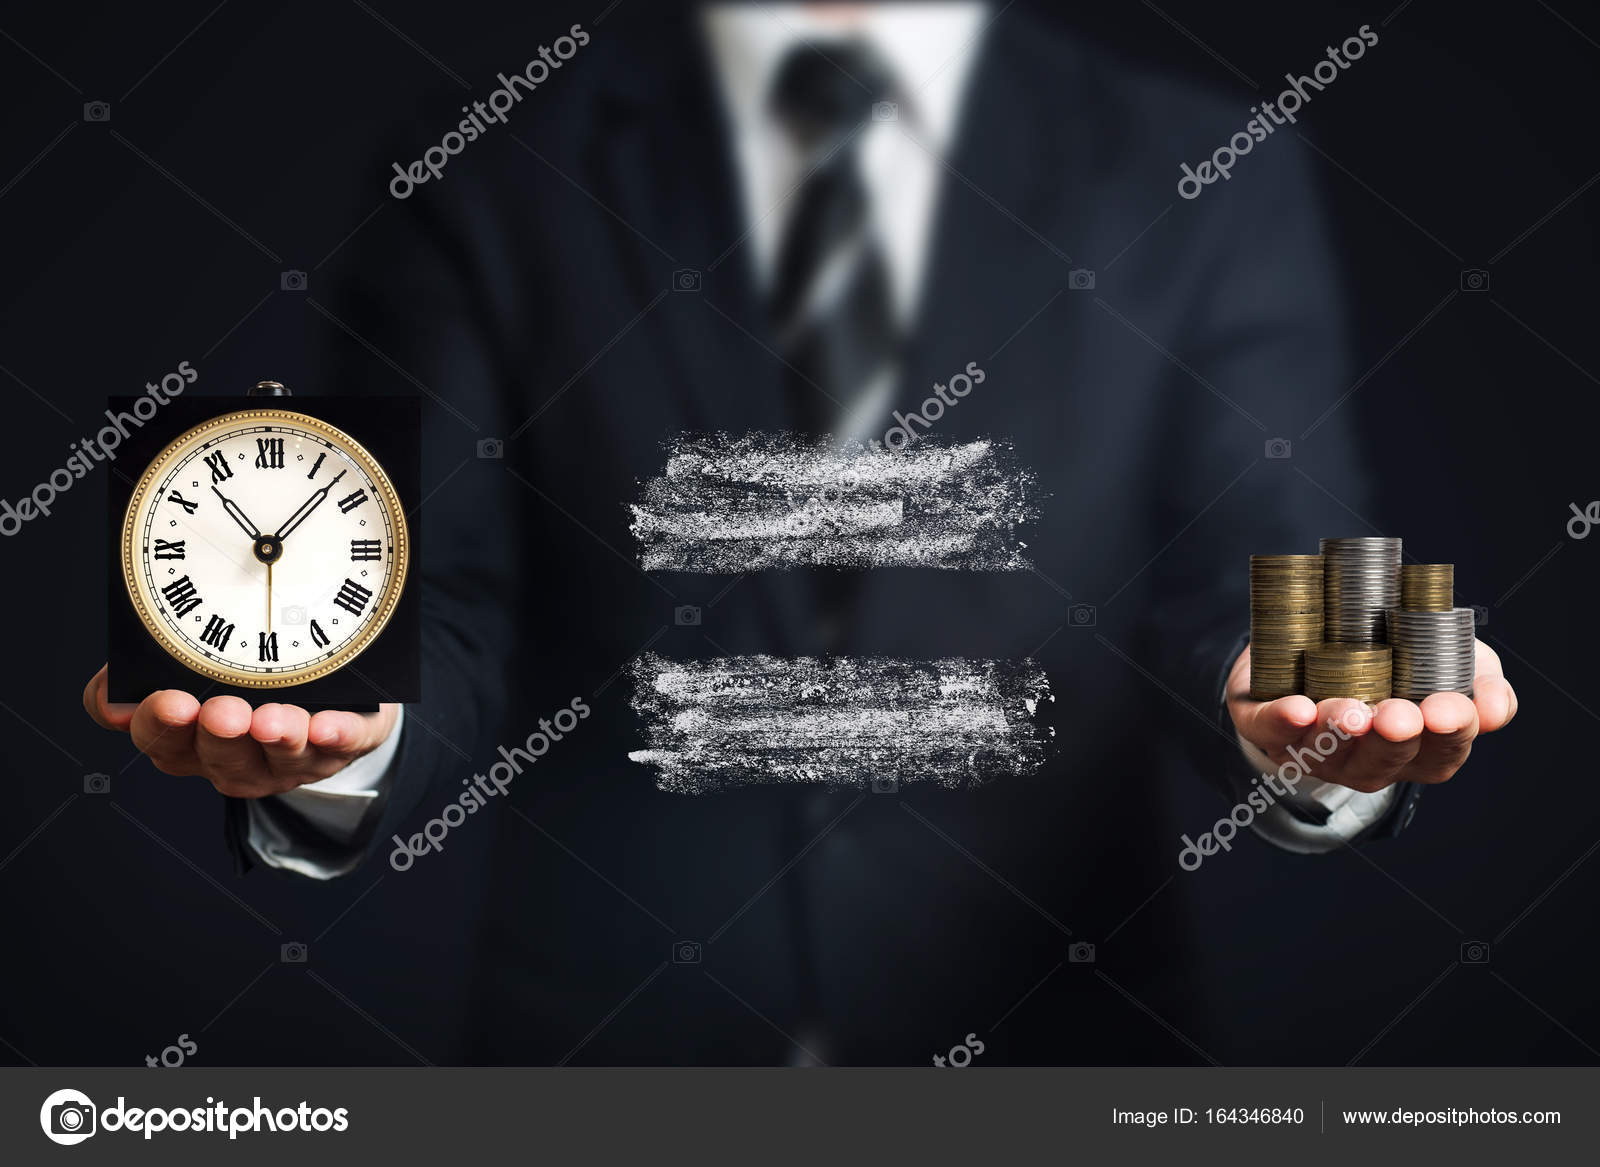 Потратить и время и деньги. Экономия времени и денег. Экономия времени. Время - деньги. Потеря времени и денег.